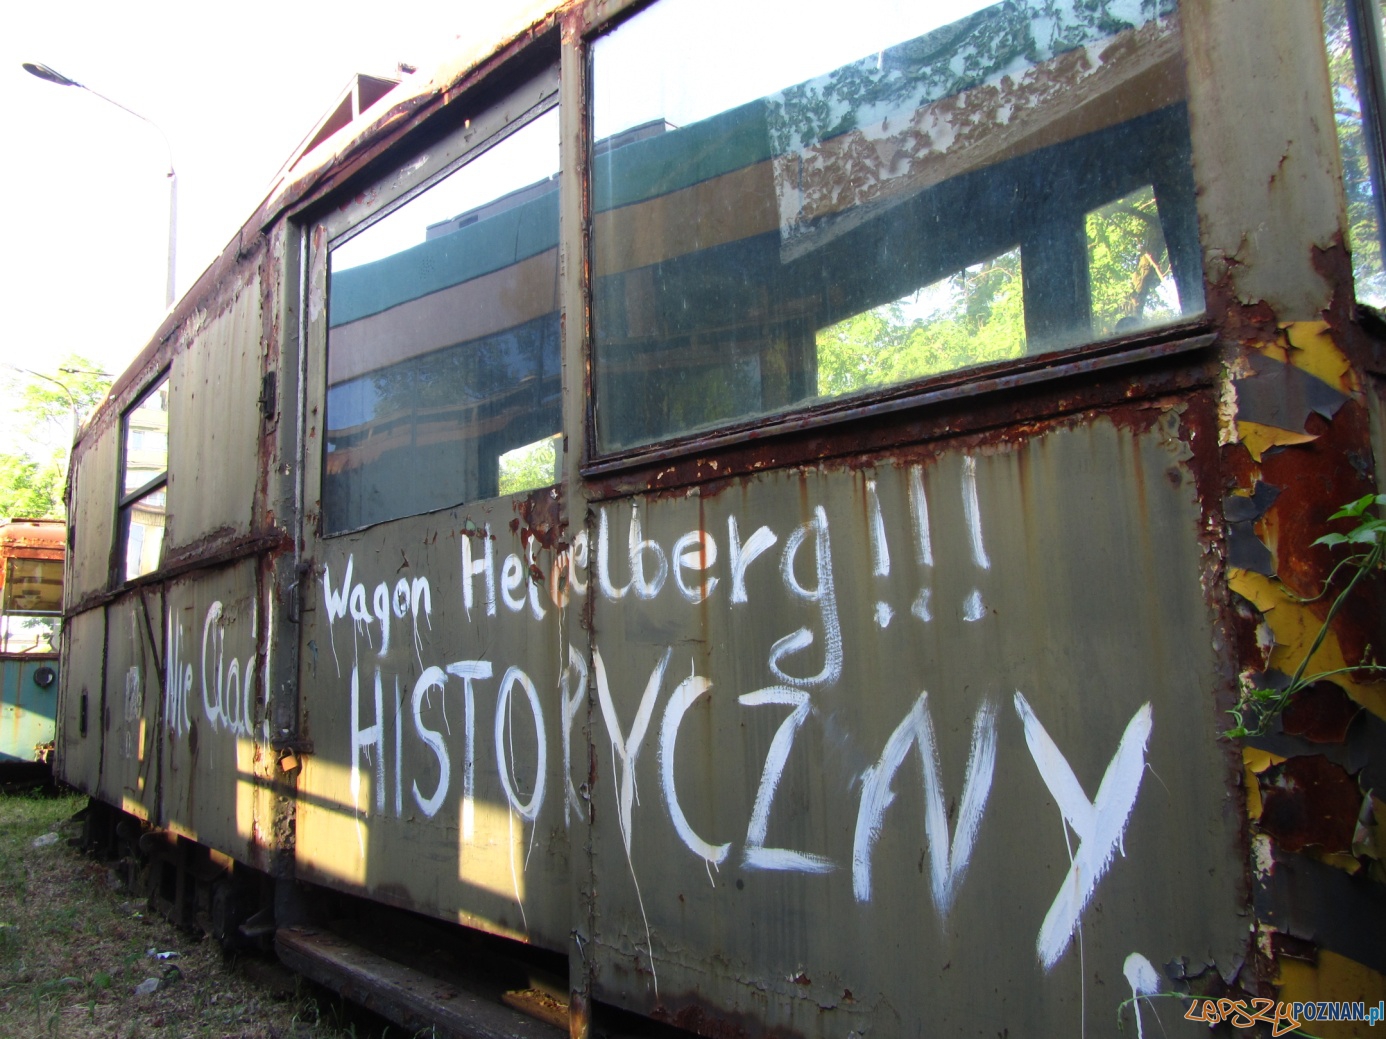 Historyczny wagon tramwajowy  Foto: Błażej Brzycki / KMPS